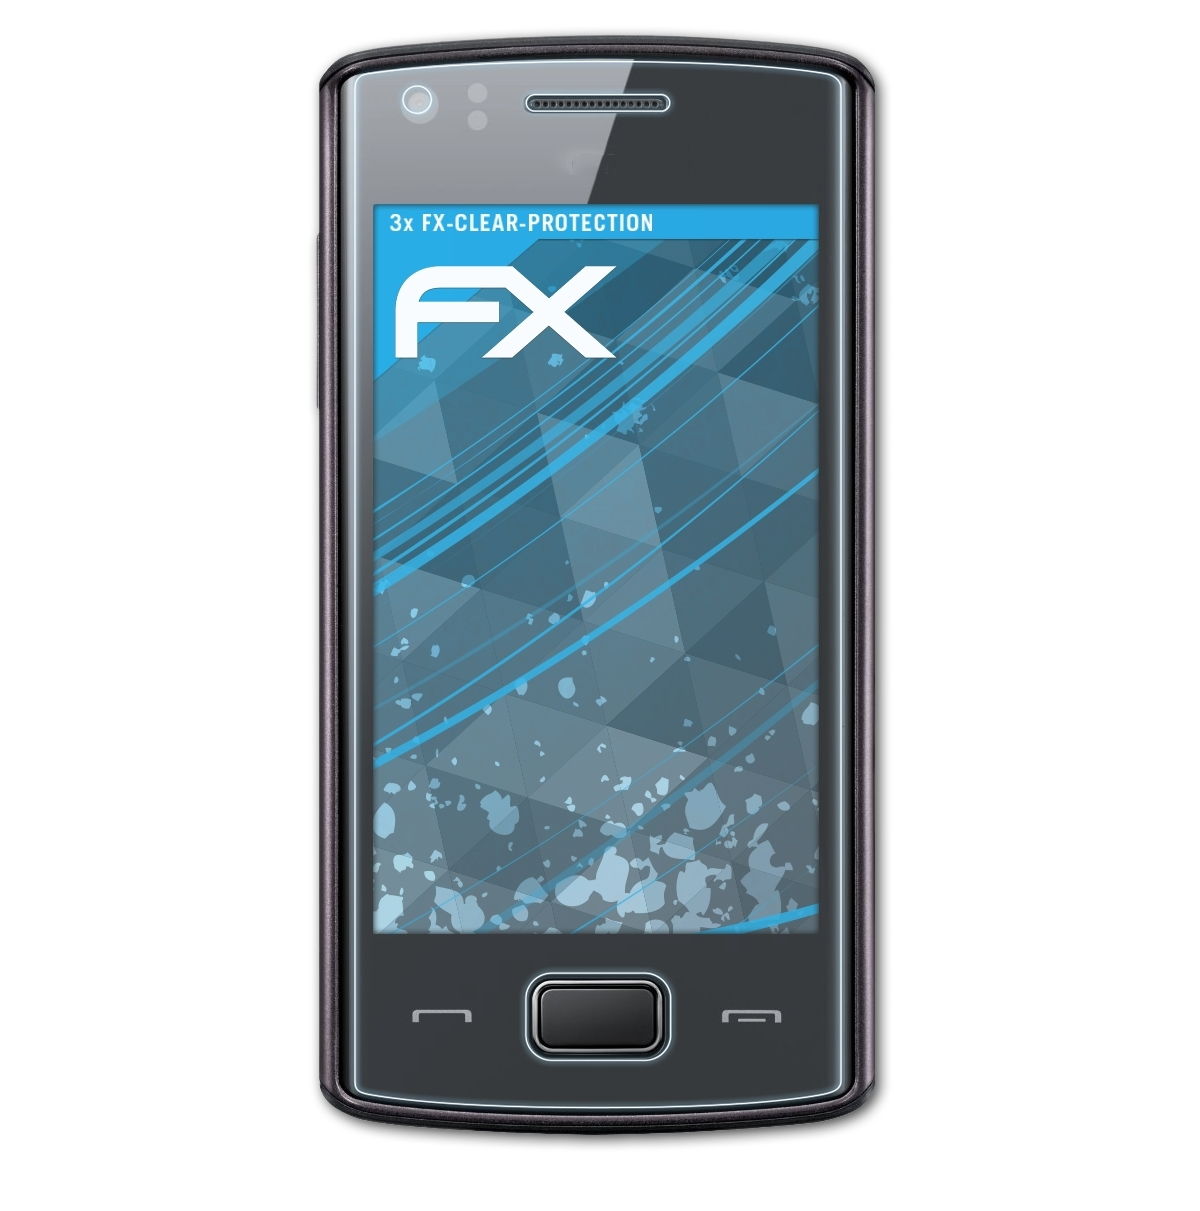 ATFOLIX 3x FX-Clear Displayschutz(für Samsung Wave 578 (GT-S5780))